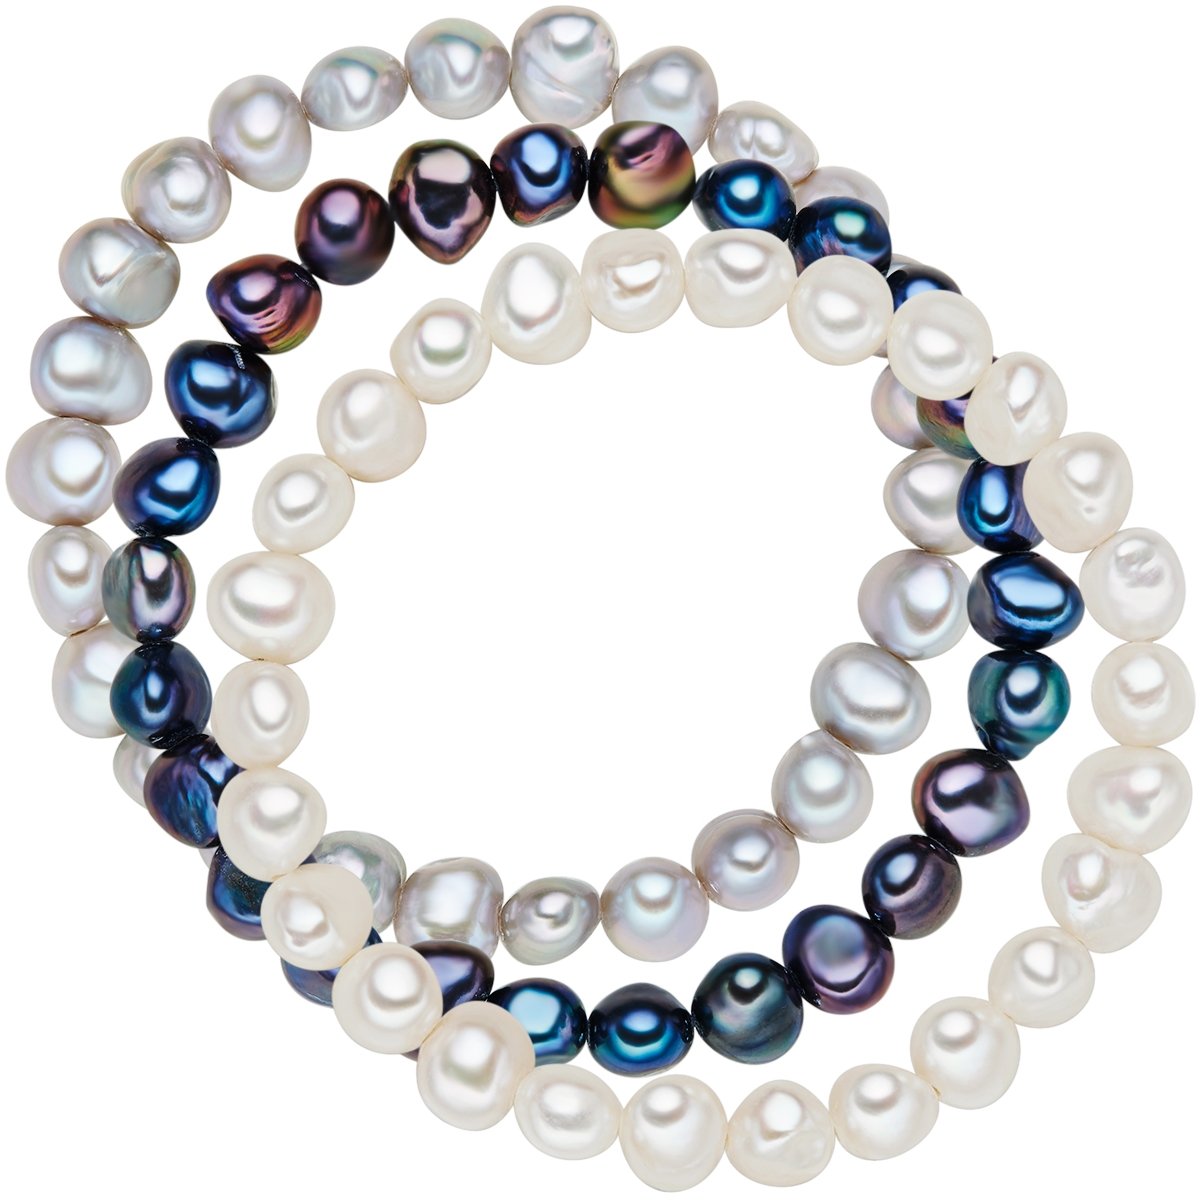 Valero Pearls Damen-Armband 3er Set hochwertige Süßwasser-Zuchtperle hellgrau weiß blau 19 cm - Perlenarmbänder mit echten Perlen weiss dunkelblau grau 60201782